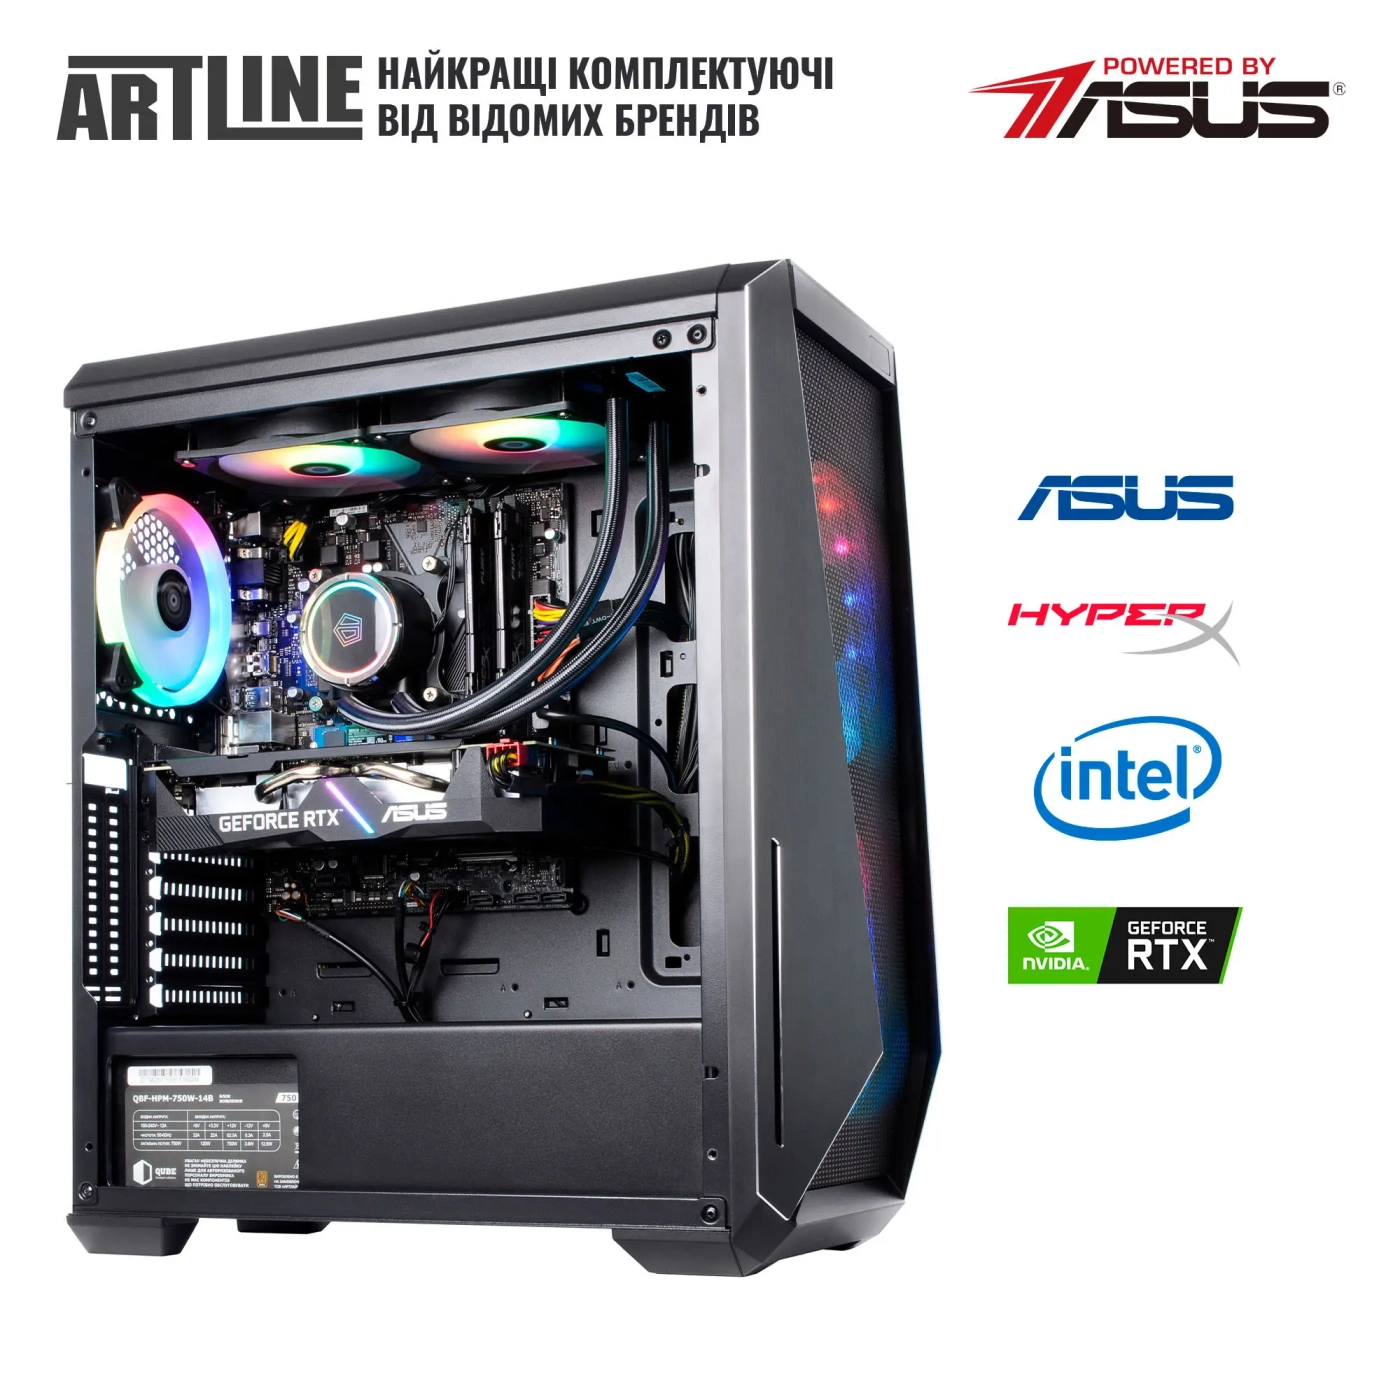 Купить Компьютер ARTLINE Gaming X91v52 - фото 9